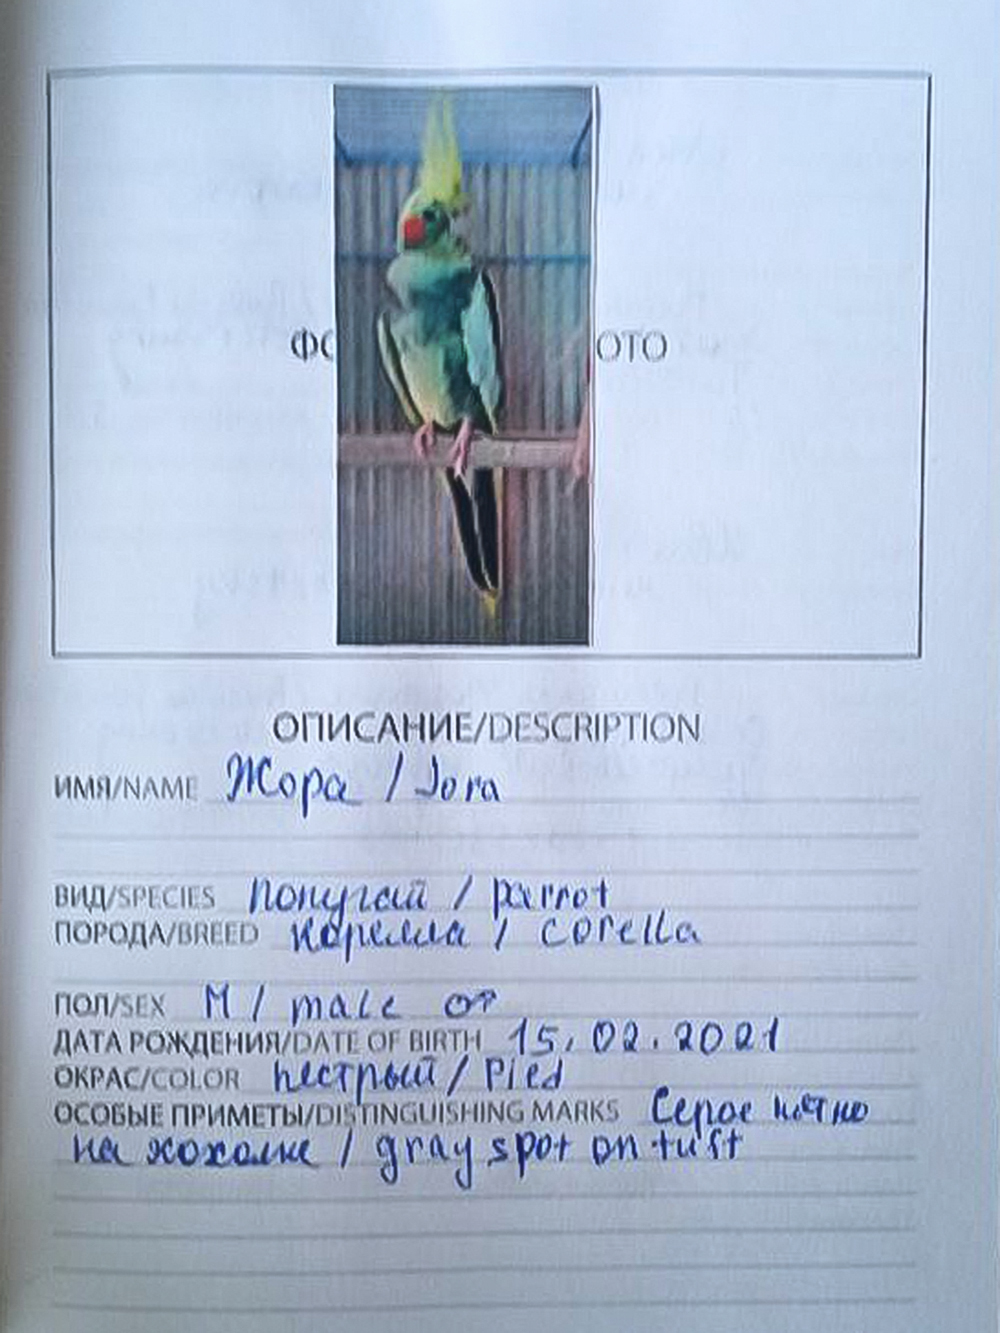 Такие паспорта мы сделали на каждого попугая и ящерицу